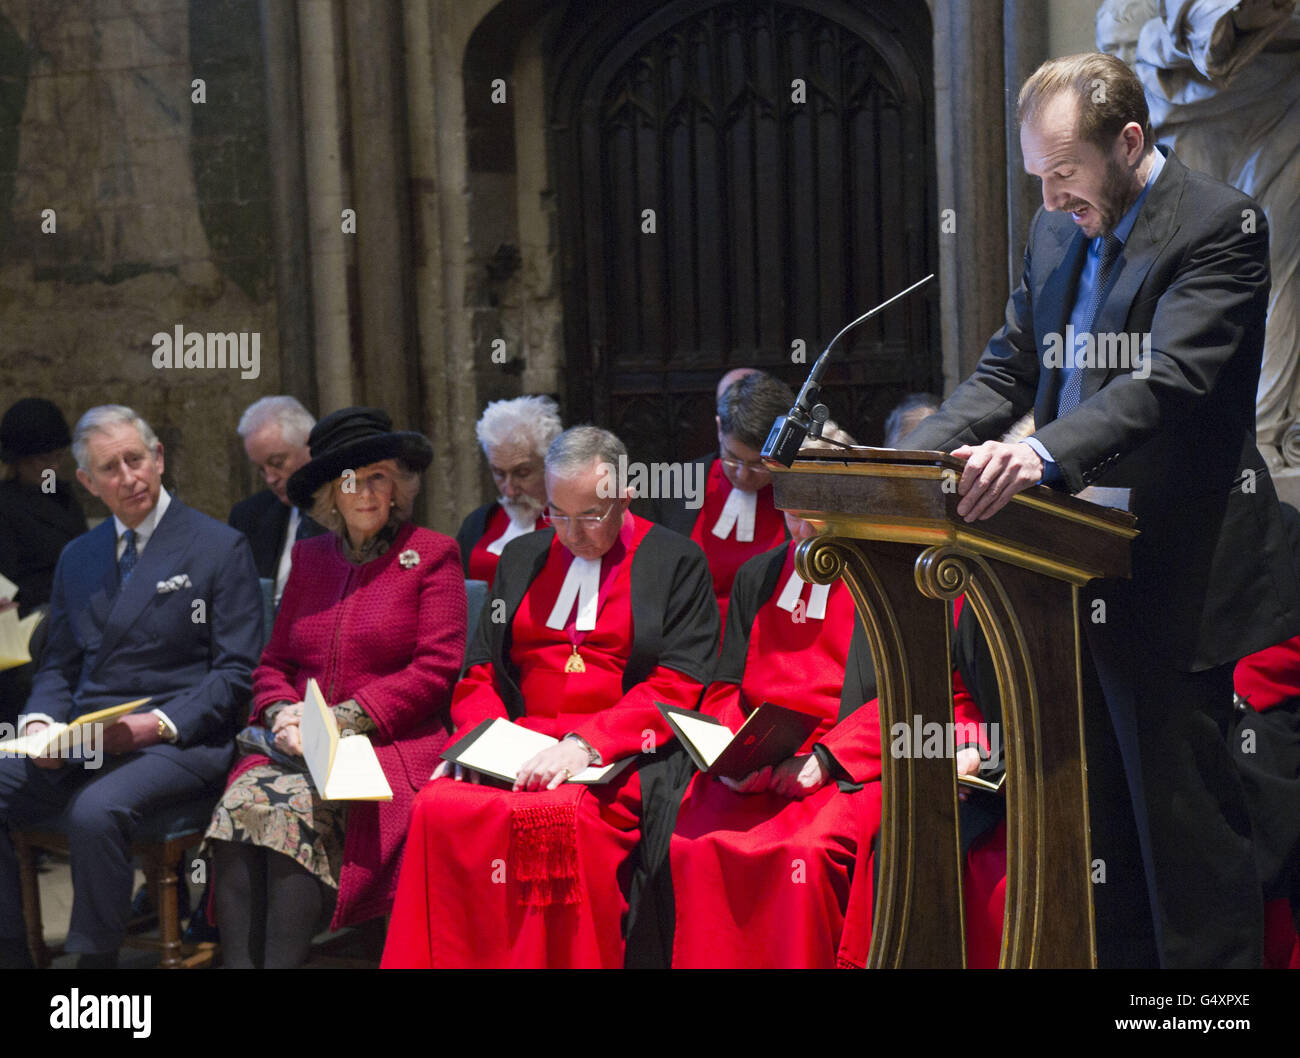 L'acteur Ralph Fiennes lit un passage de la Maison sombre lors d'une cérémonie à l'abbaye de Westminster, à Londres, pour marquer le bicentenaire de la naissance de Charles Dickens. Banque D'Images